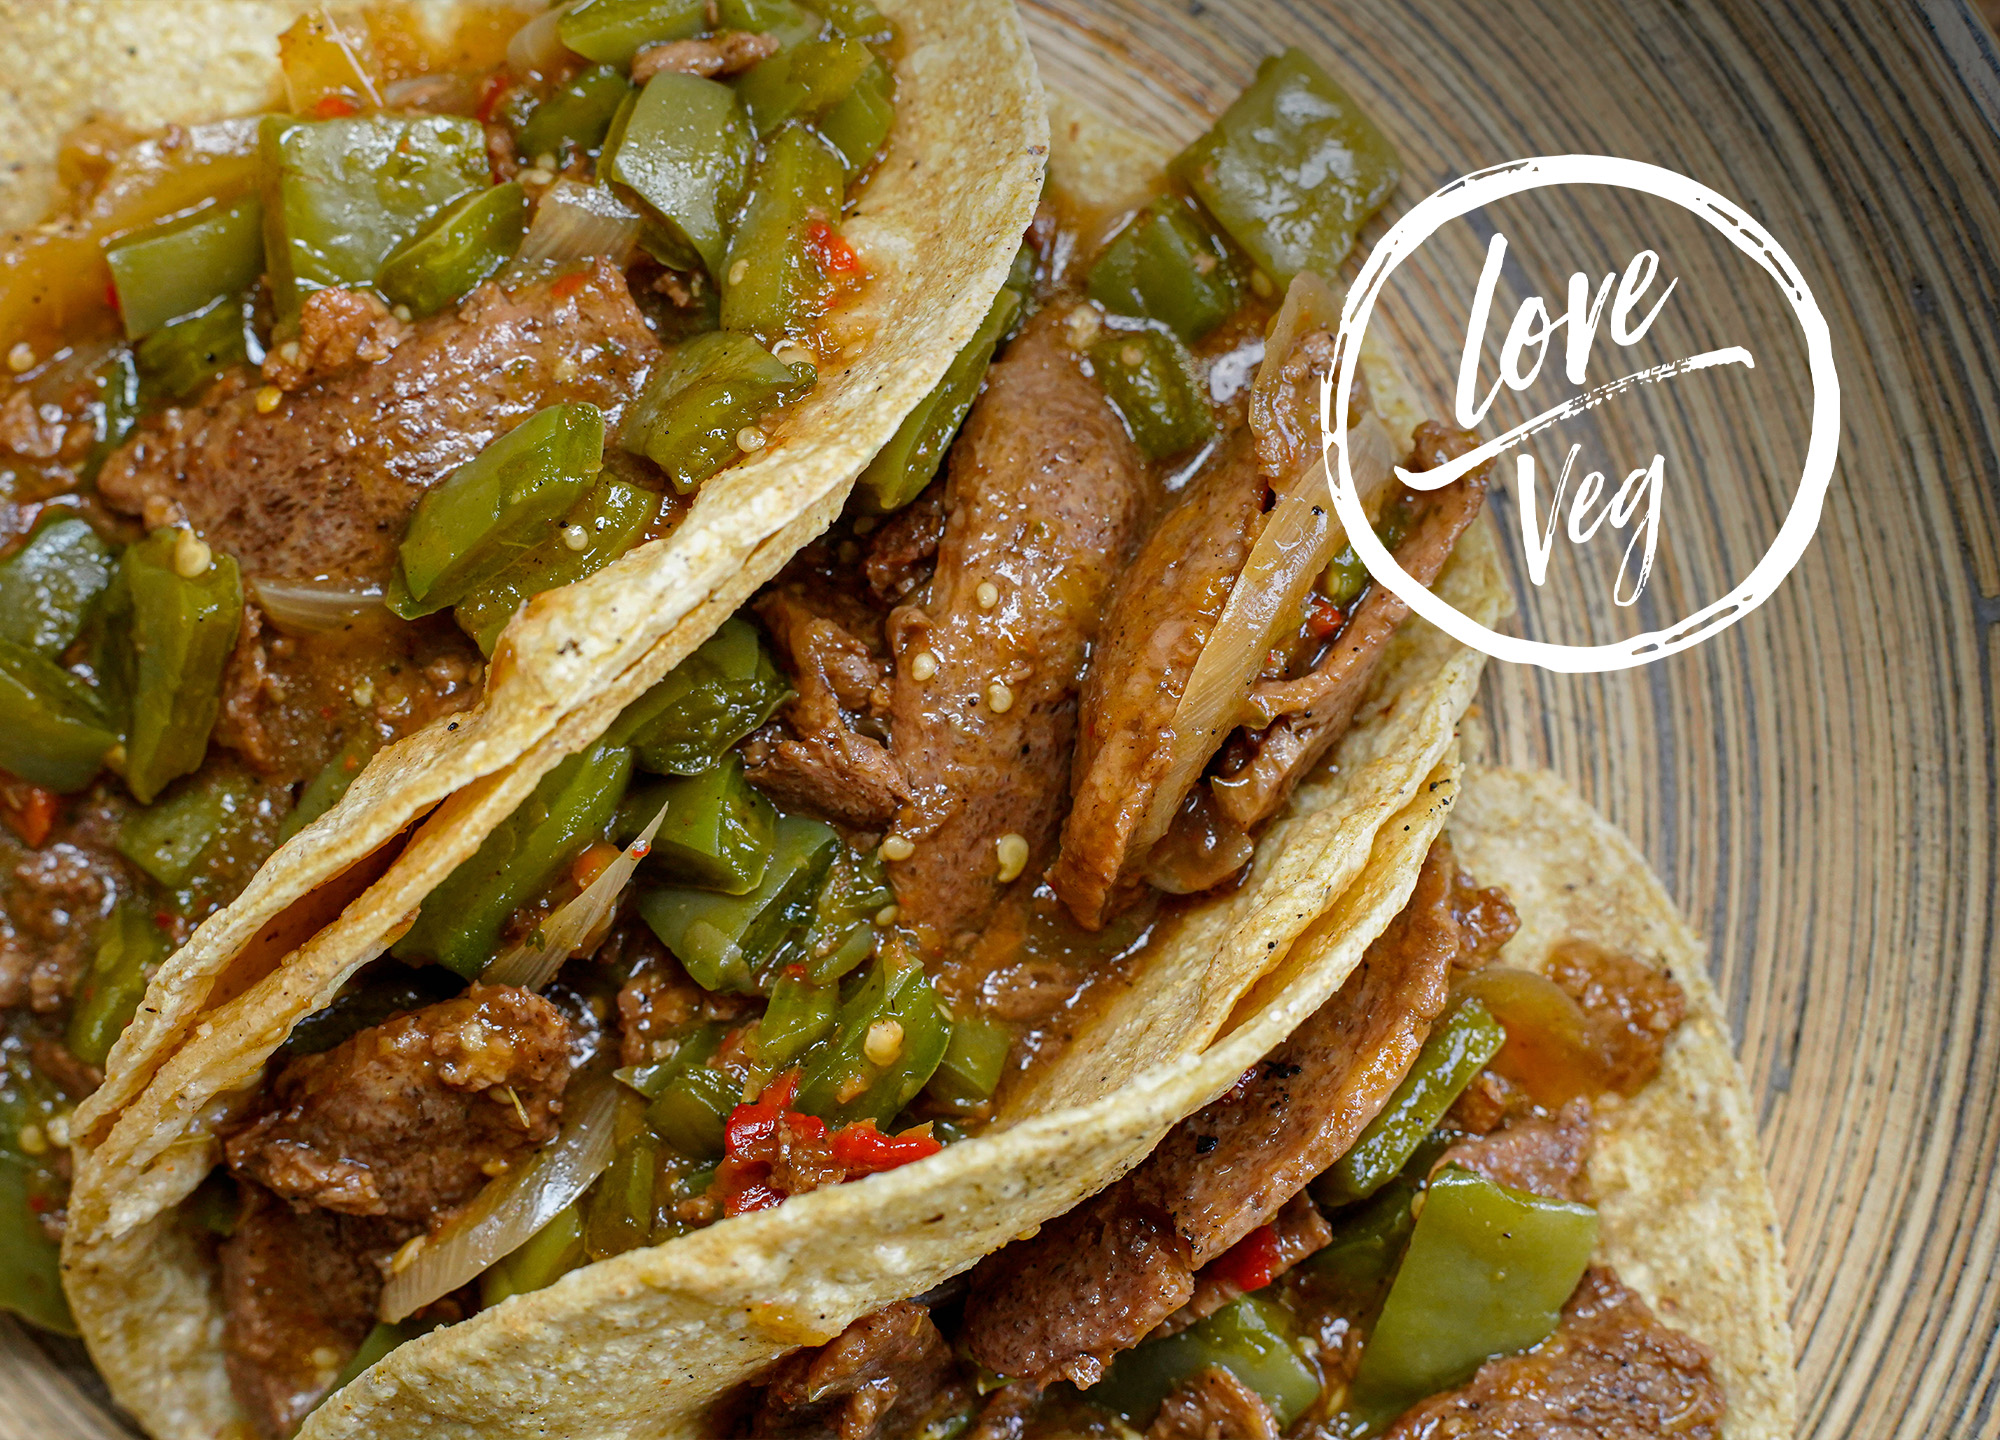 Tacos de Lengua de Soya en Salsa con Nopales | Love Veg